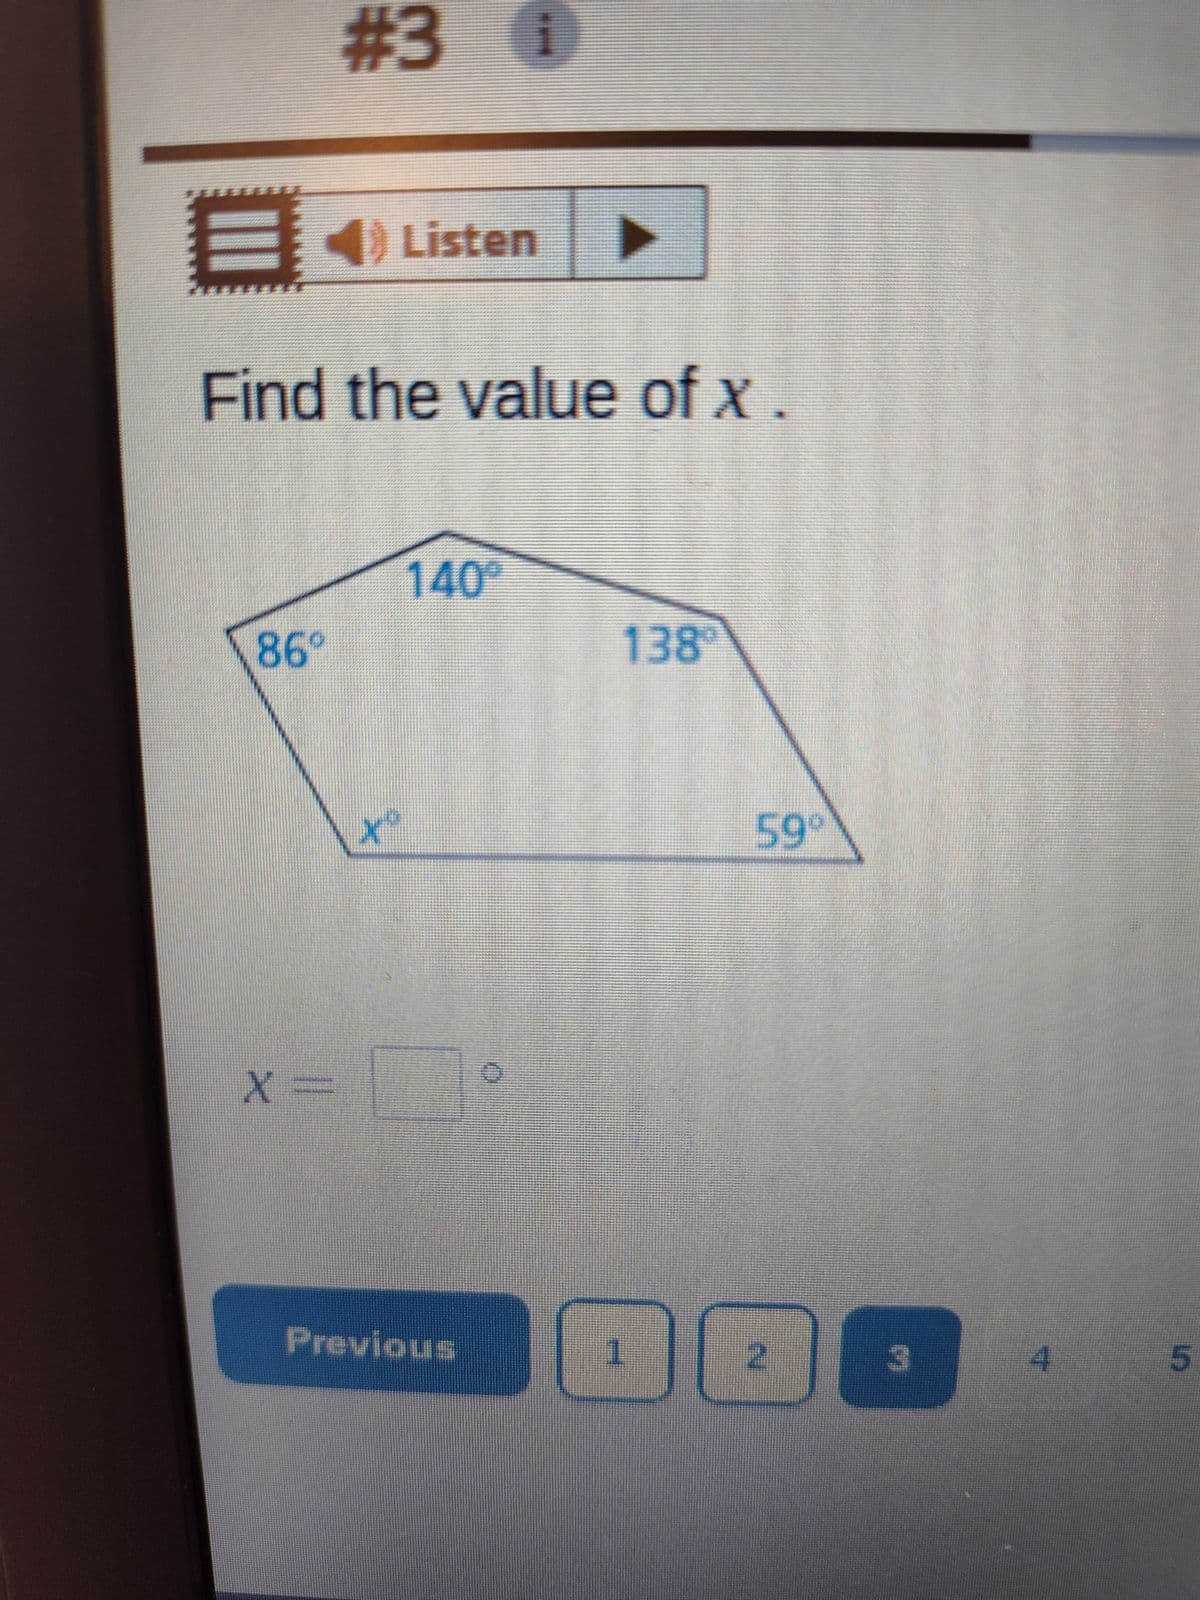 ***
光光頭
4) Listen
i
#3 Ⓡ
Find the value of x
86°
X =
X
to
140°
Previous
138
1
59°
2
3
4